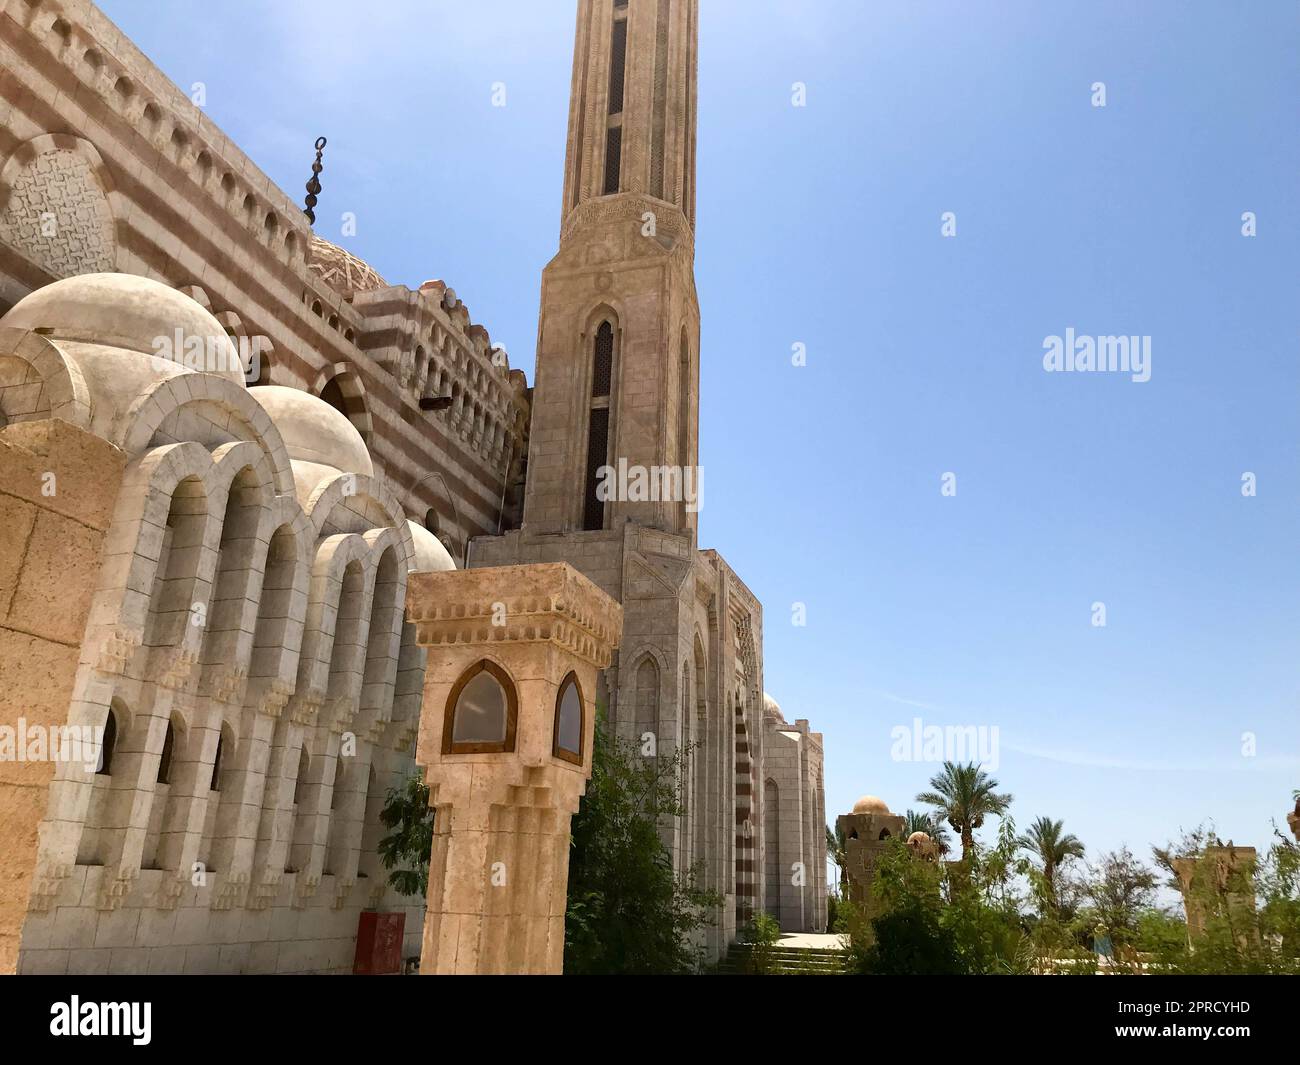 Una grande moschea islamica araba in pietra beige, un tempio per le preghiere di un dio con un'alta torre in un caldo paese tropicale. Foto Stock